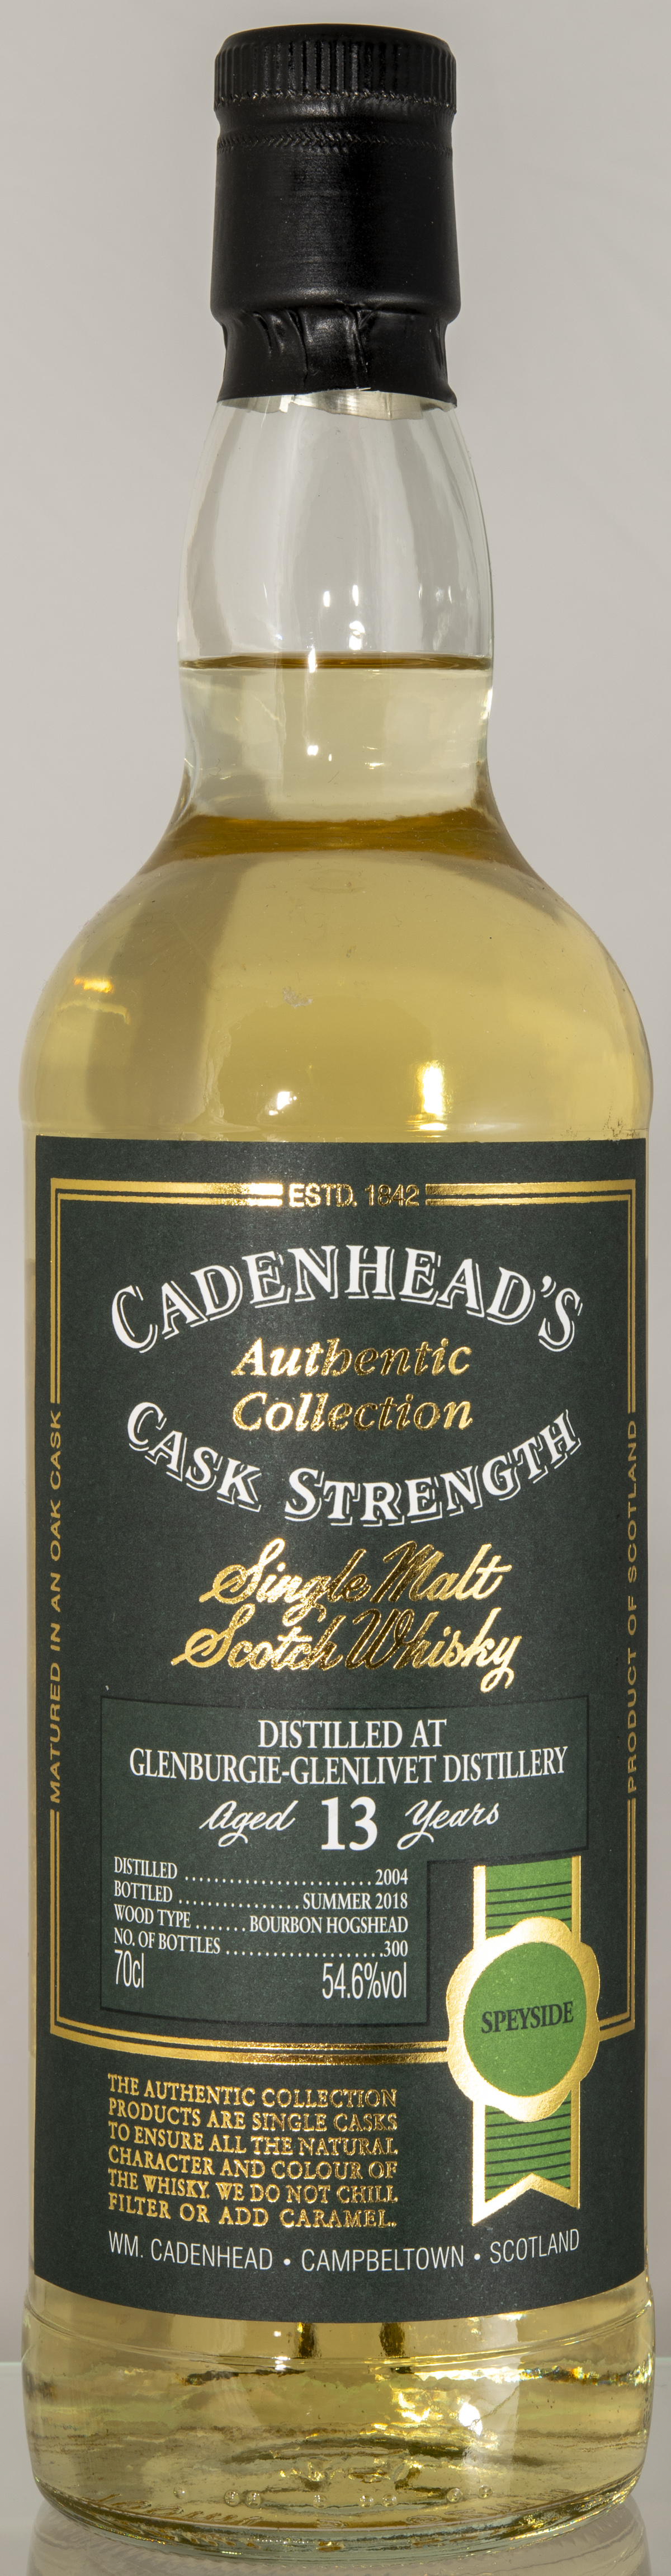 Billede: D85_8334 - Cadenhead Authentic Collection - Glenburgie-Glenlivet 13 - bottle front.jpg